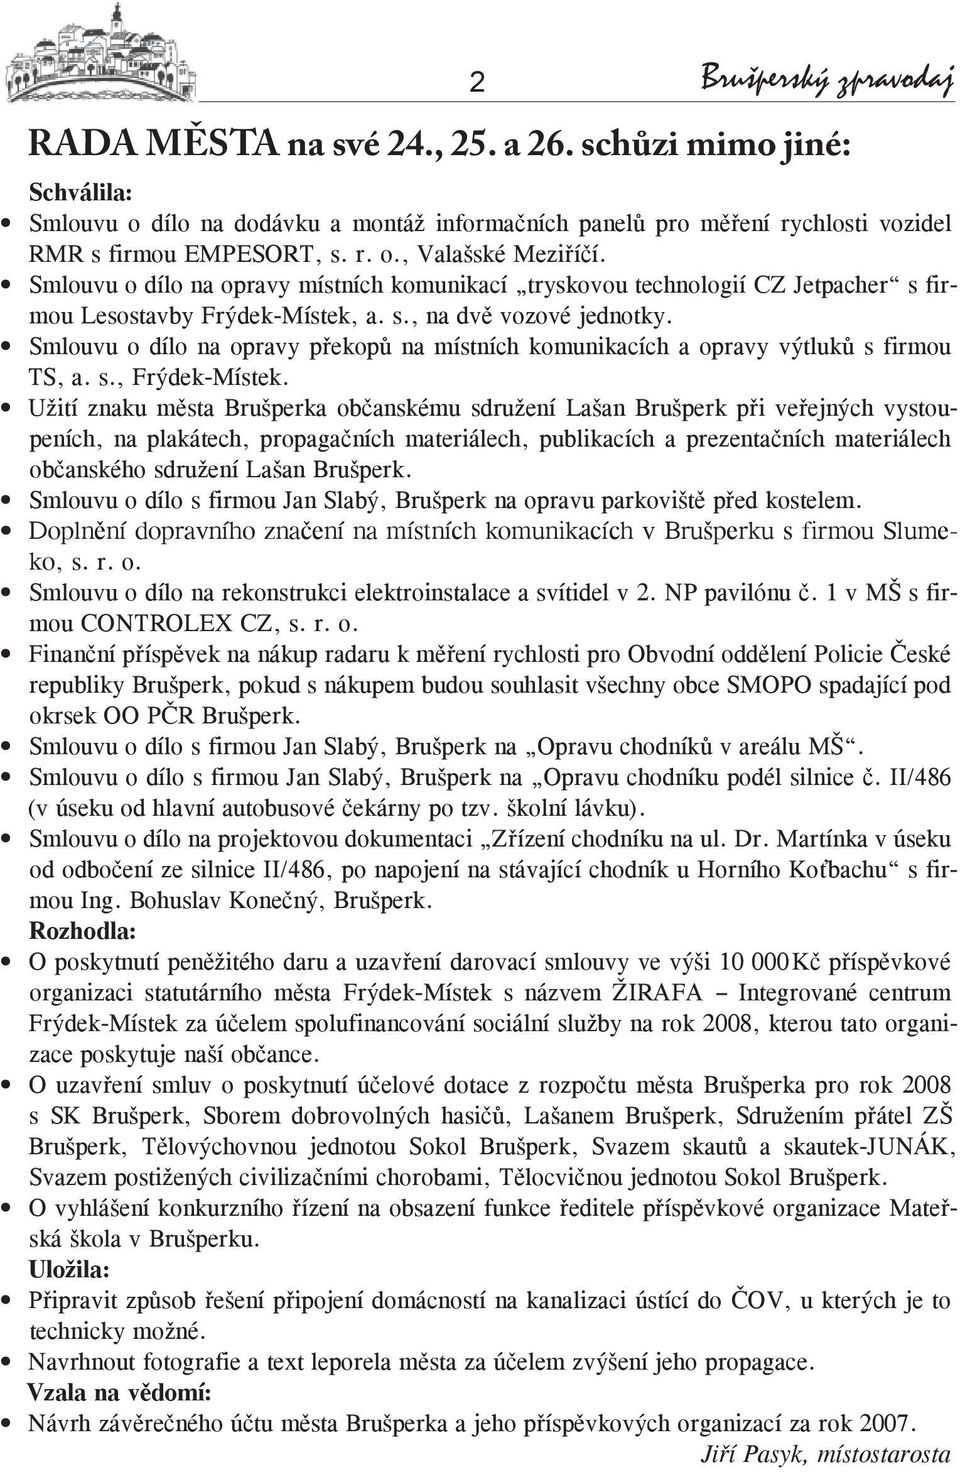 Smlouvu o dílo na opravy překopů na místních komunikacích a opravy výtluků s firmou TS, a. s., Frýdek-Místek.